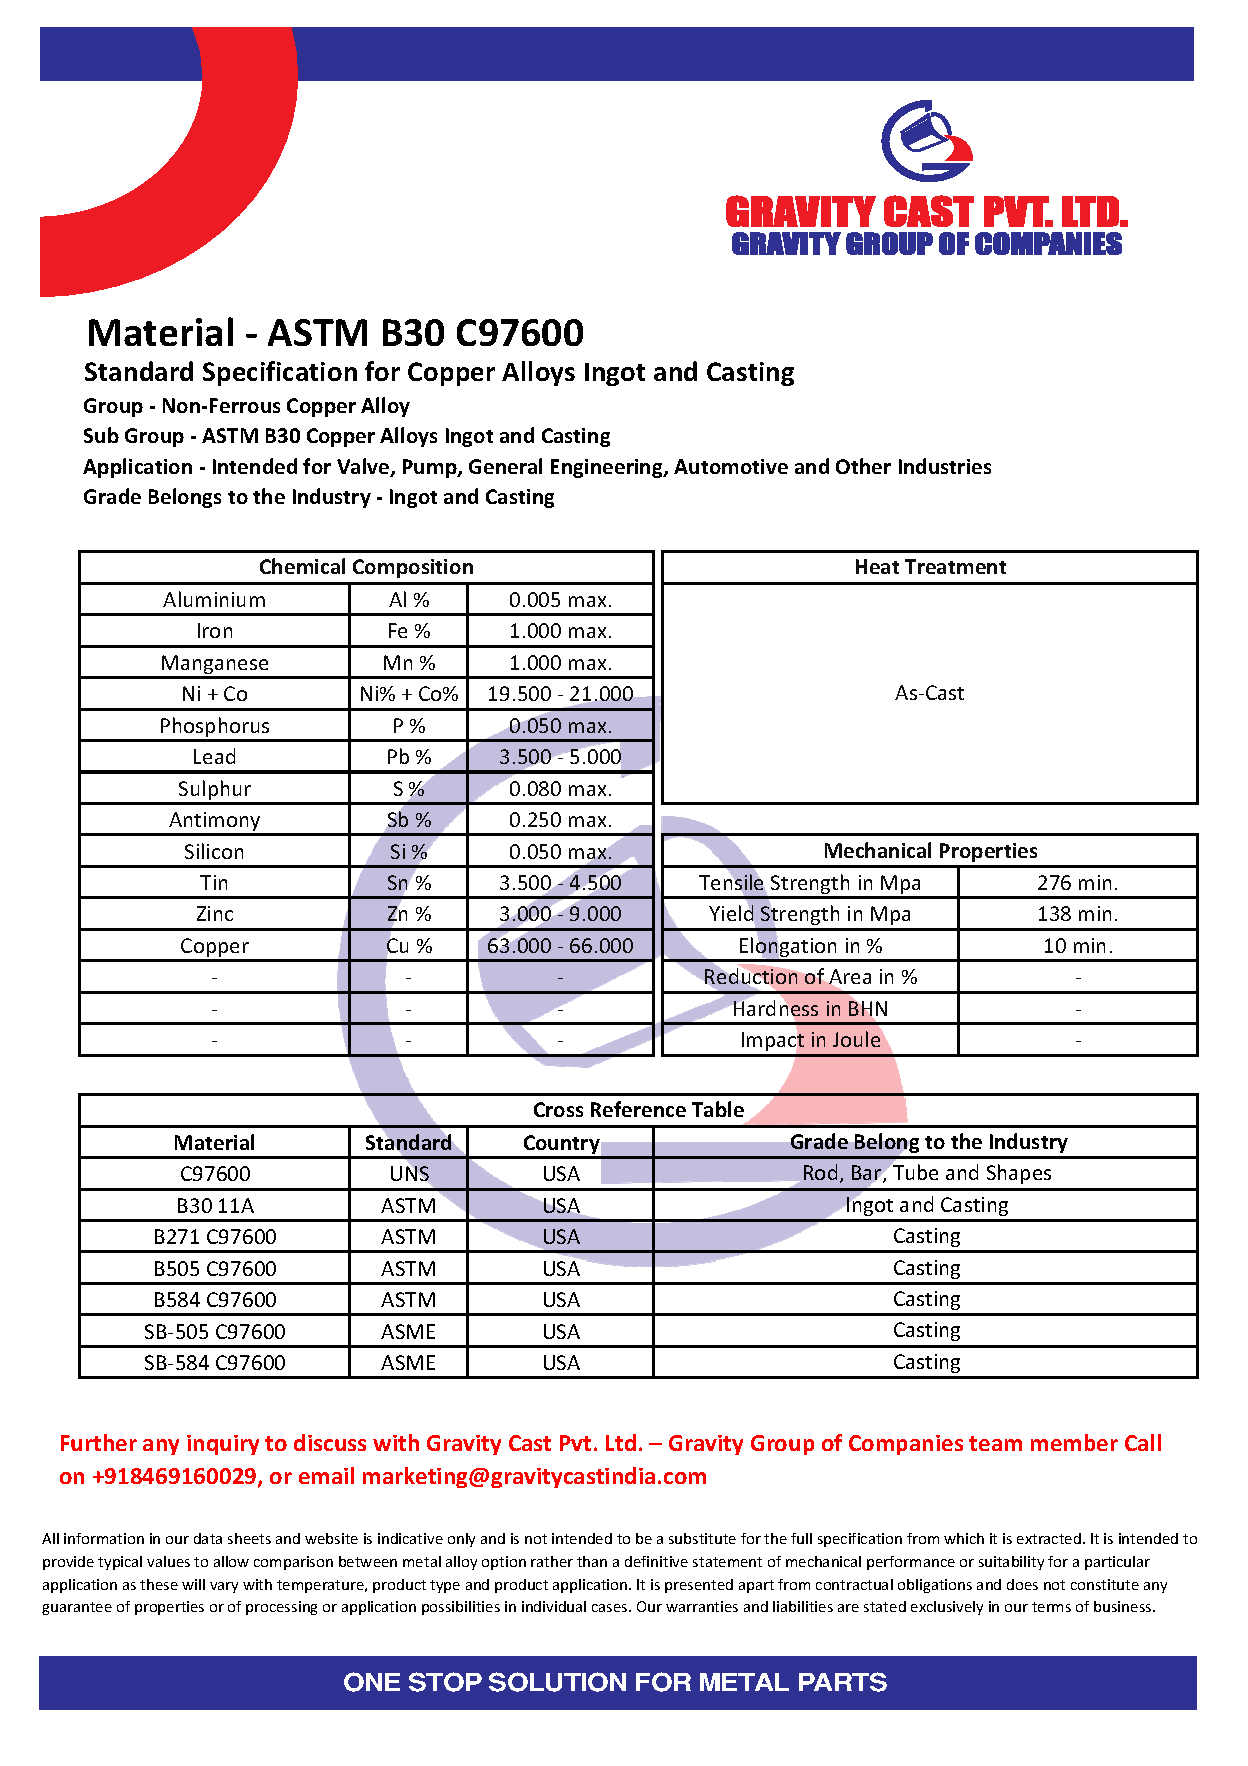 ASTM B30 C97600.pdf